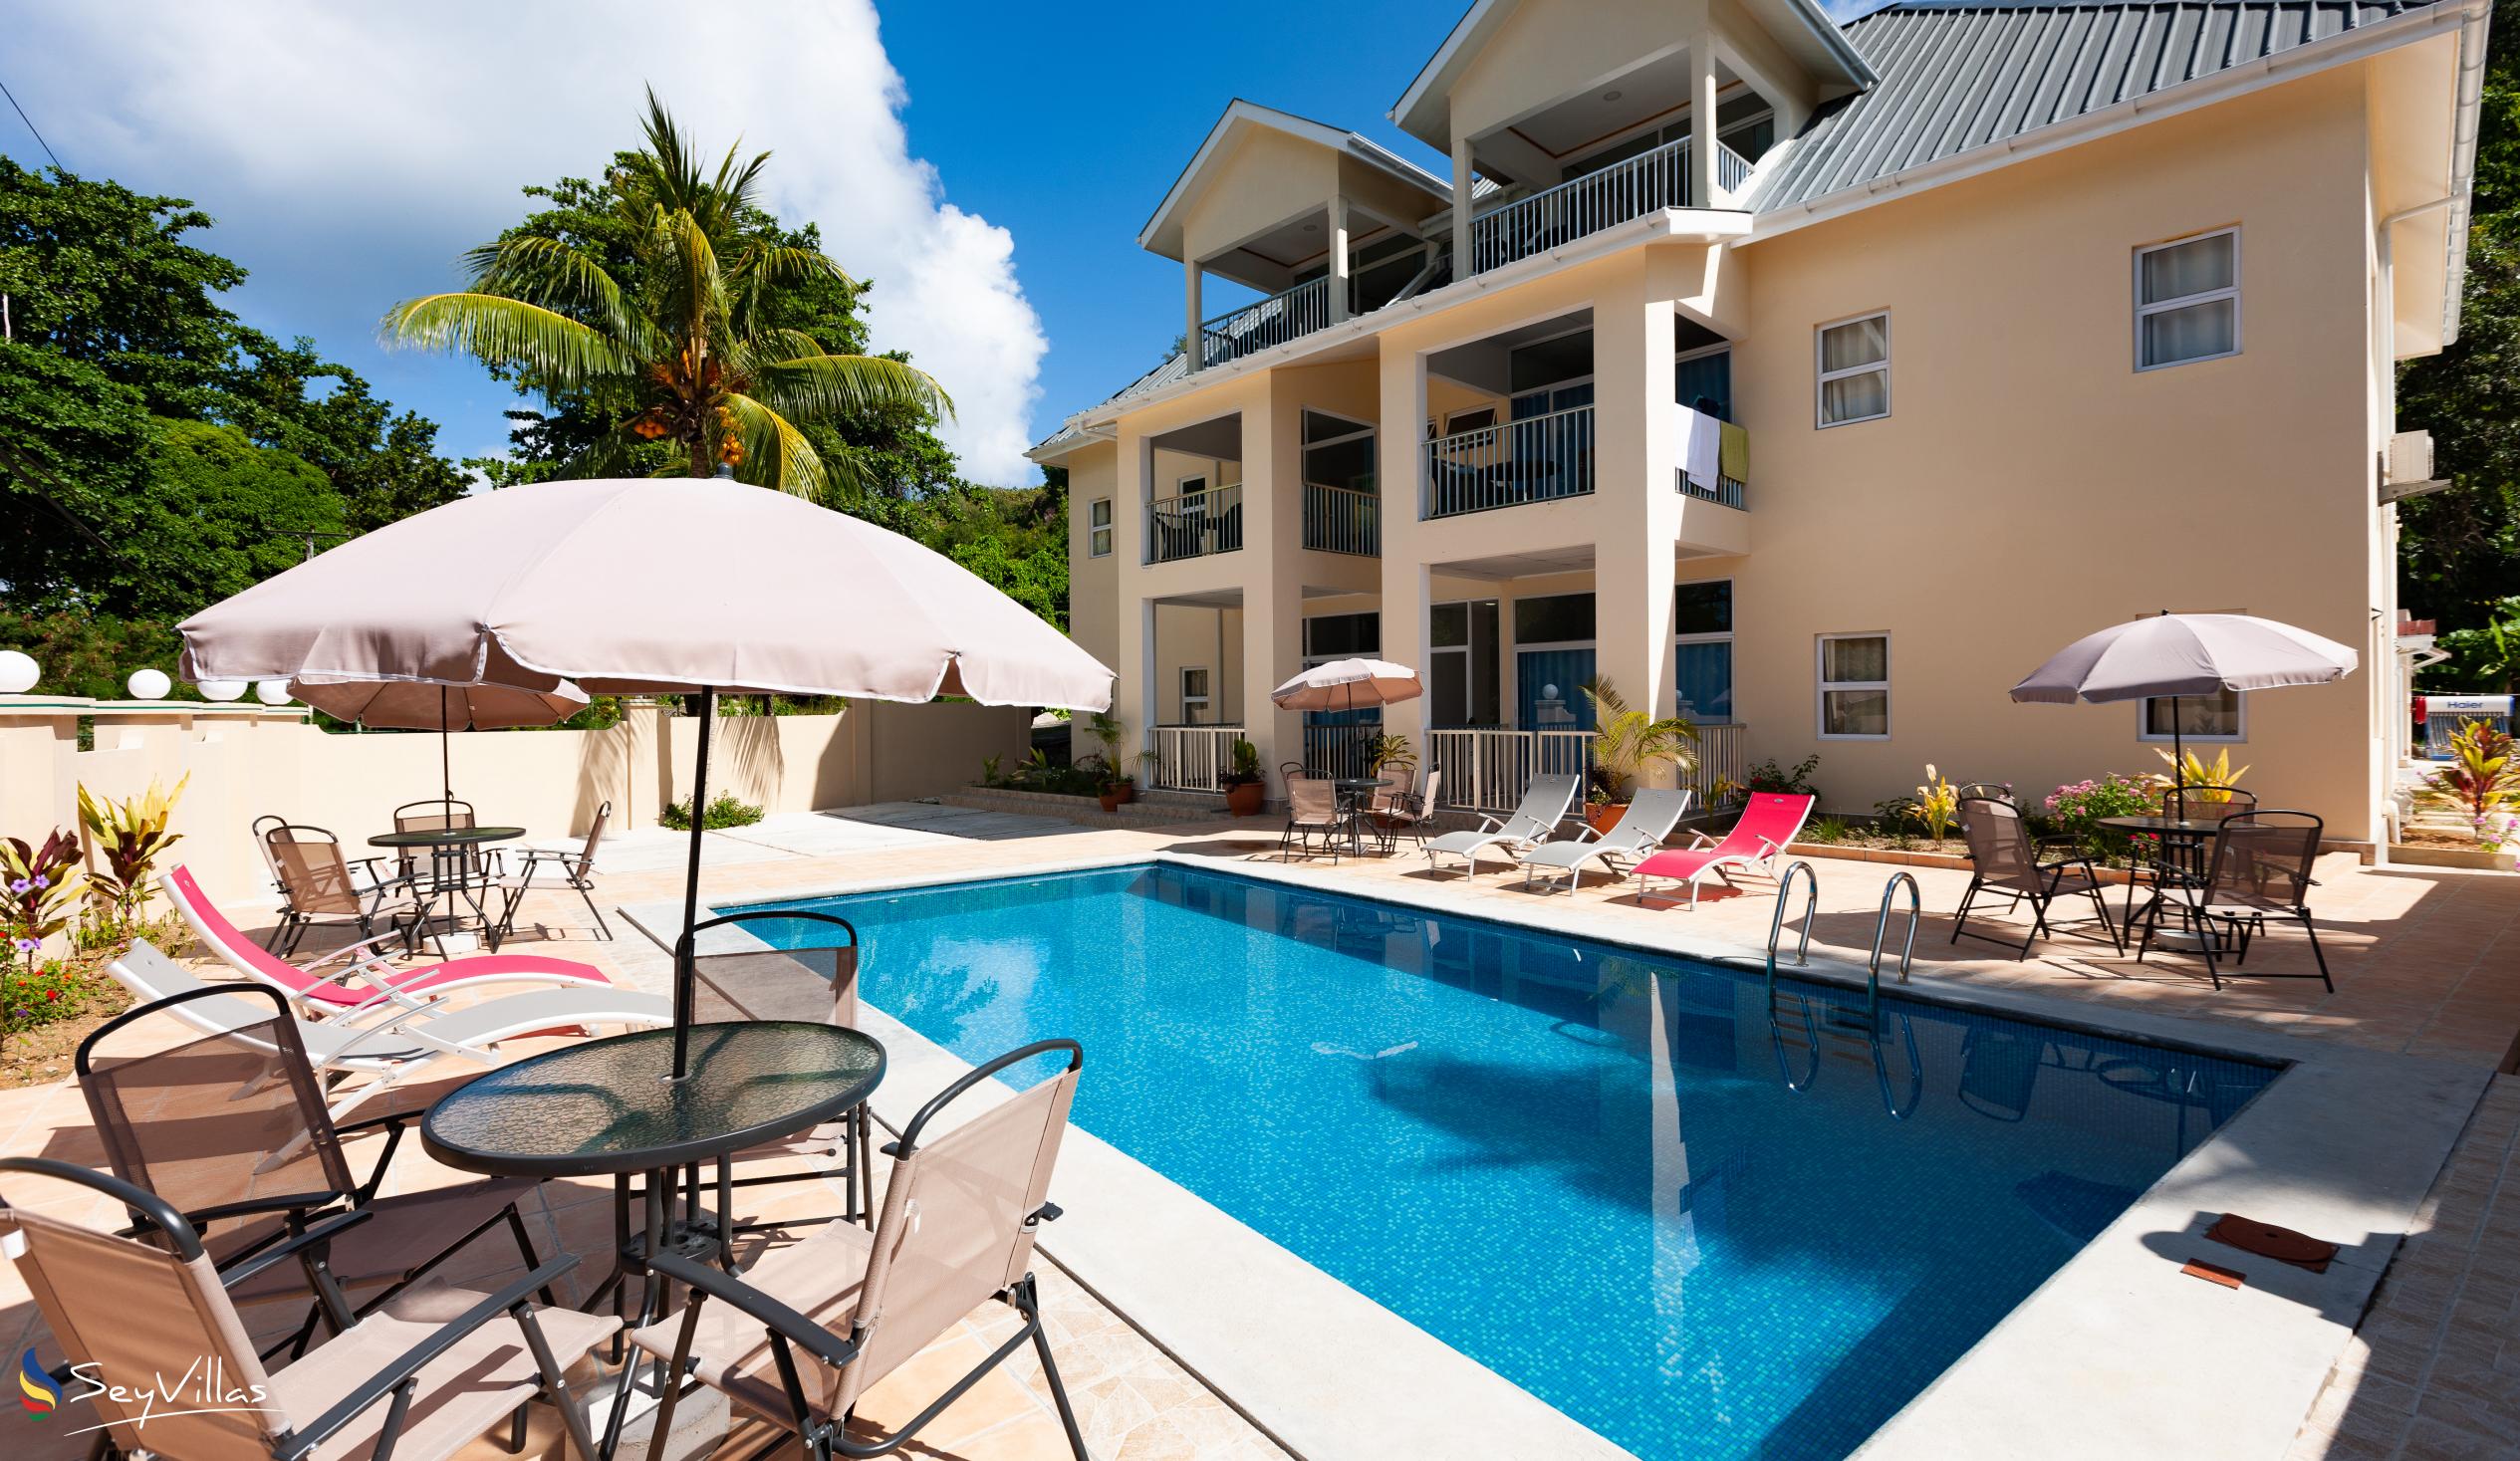 Foto 1: Home Confort - Aussenbereich - Praslin (Seychellen)